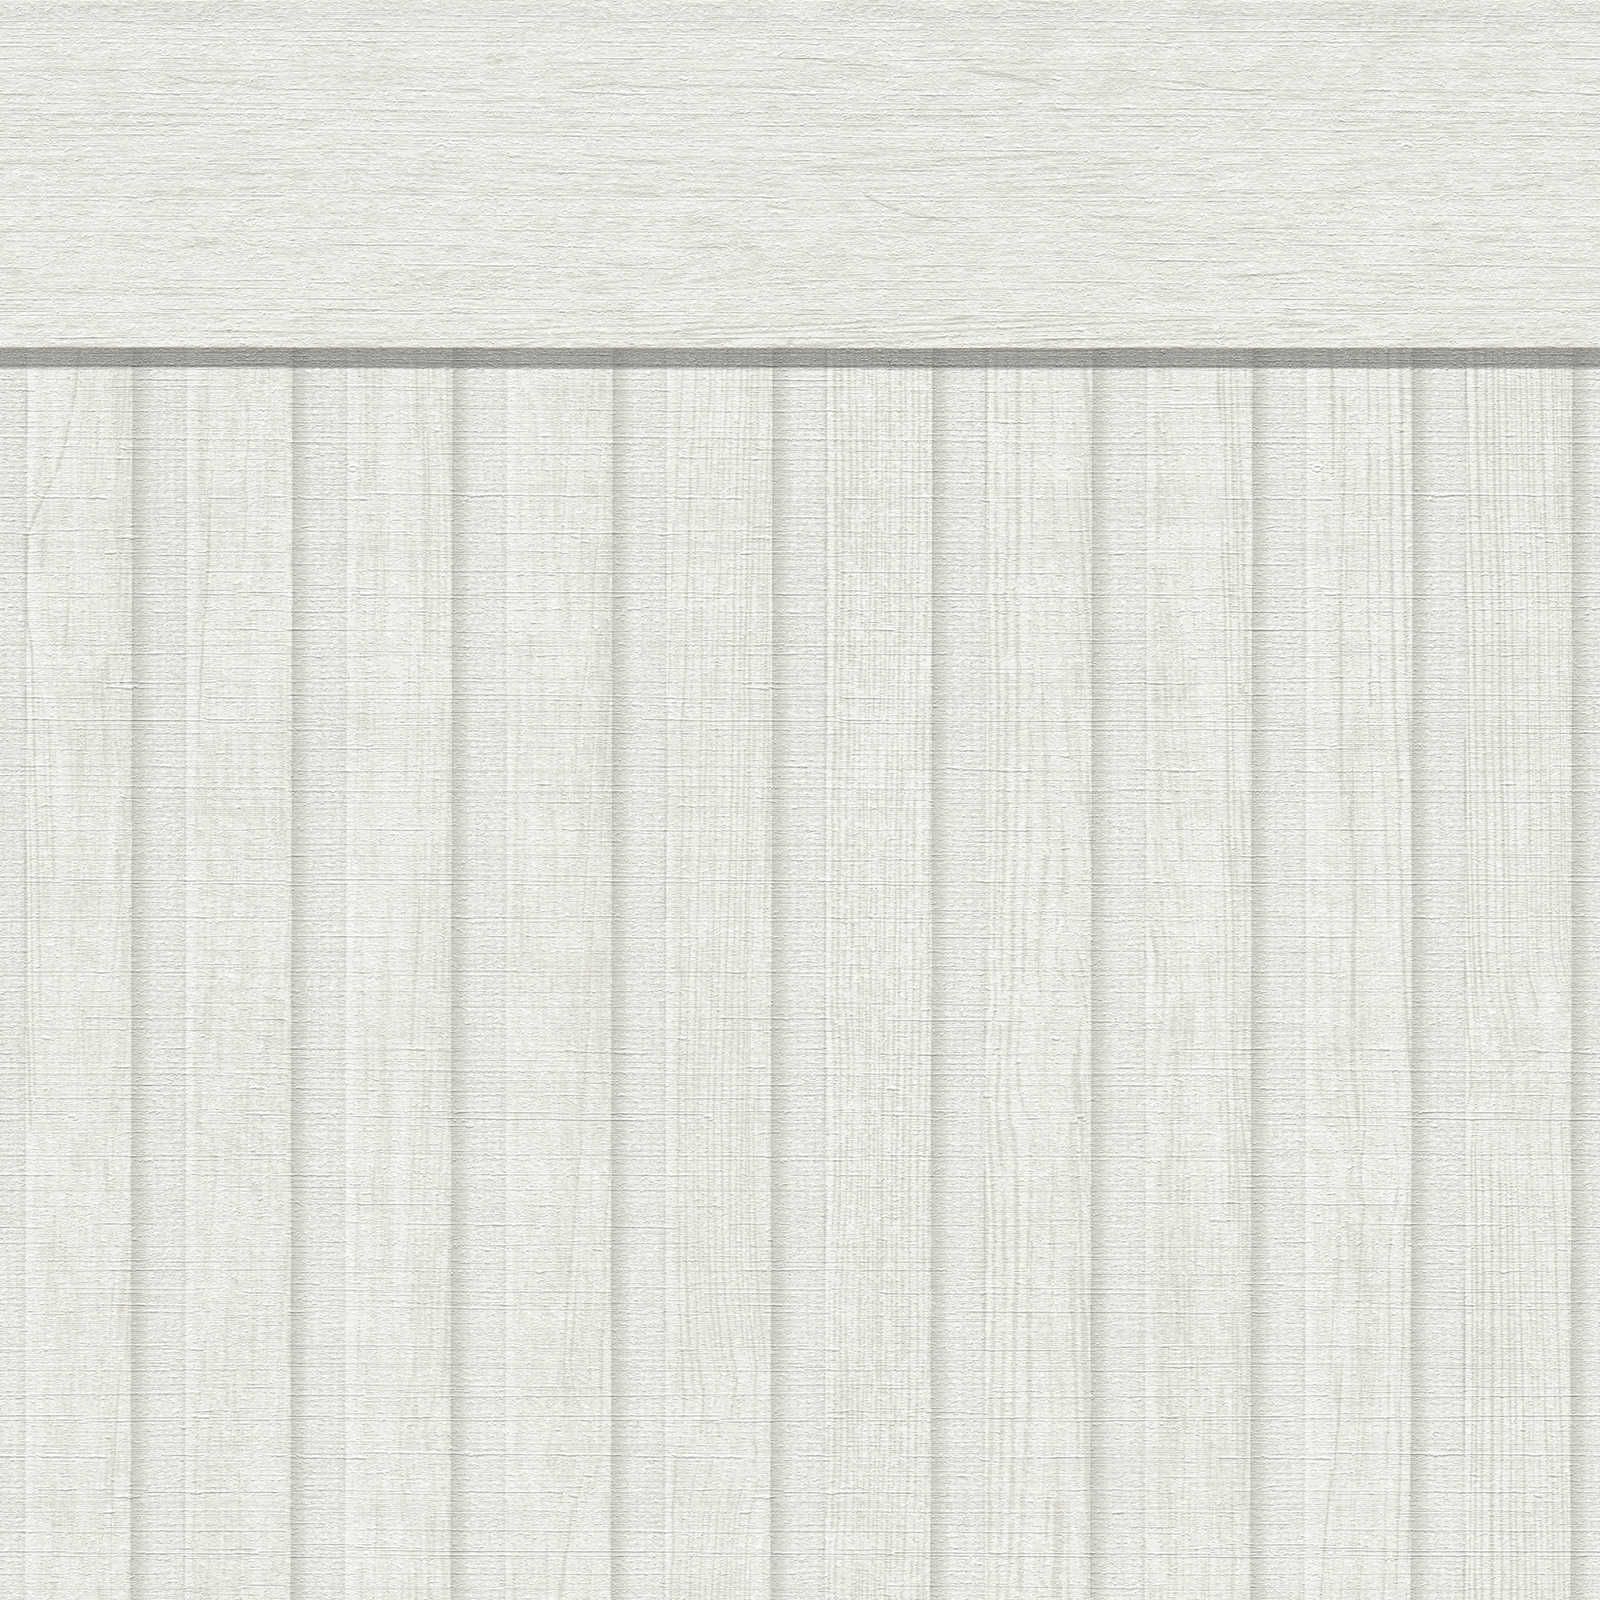 Pannello da parete in tessuto non tessuto con motivo acustico realistico in legno - bianco, grigio
